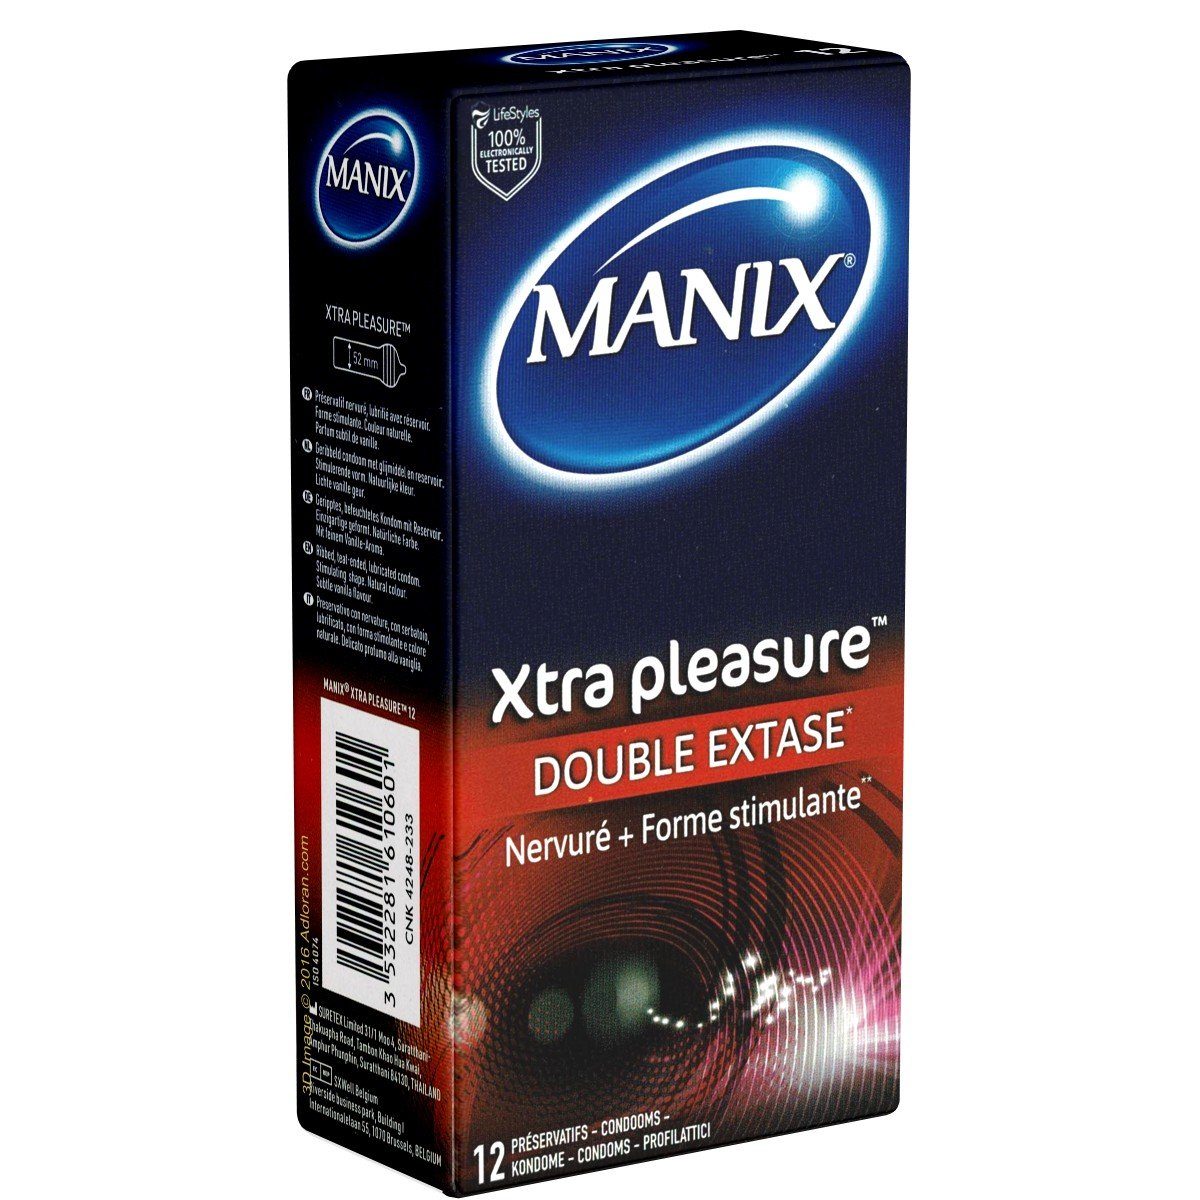 Manix Kondome Xtra pleasure - Double Extase (stimulierend & aktverlängernd) Packung mit, 12 St., aktverlängernde Kondome mit einzigartiger Formgebung